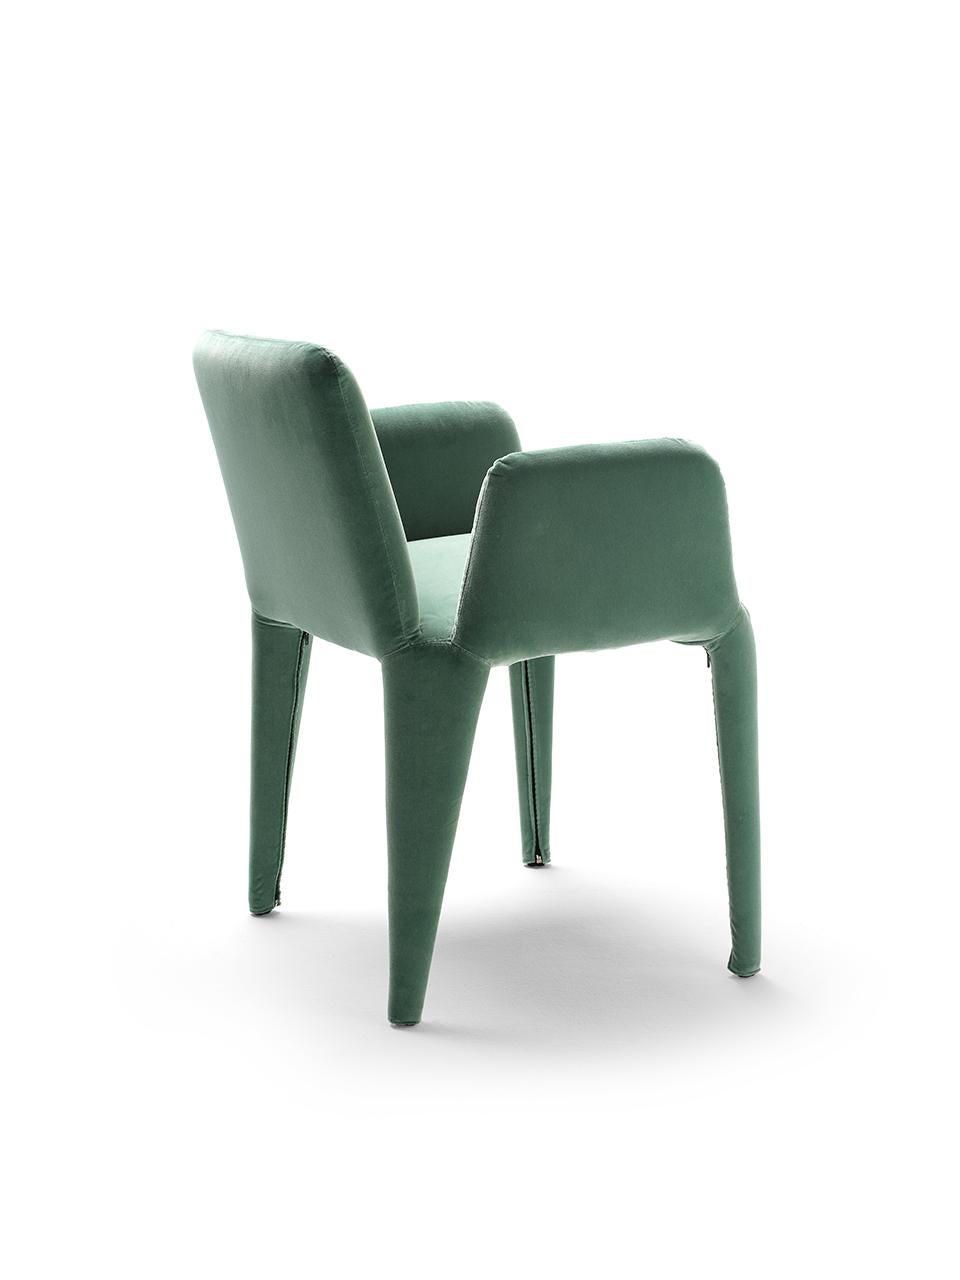 Le petit fauteuil Nova est le dernier né de la famille de produits homonymes. Il s'agit d'un fauteuil léger en textile, au look précieux, dont la housse en tissu est entièrement déhoussable. La structure interne est un squelette minimal de tiges